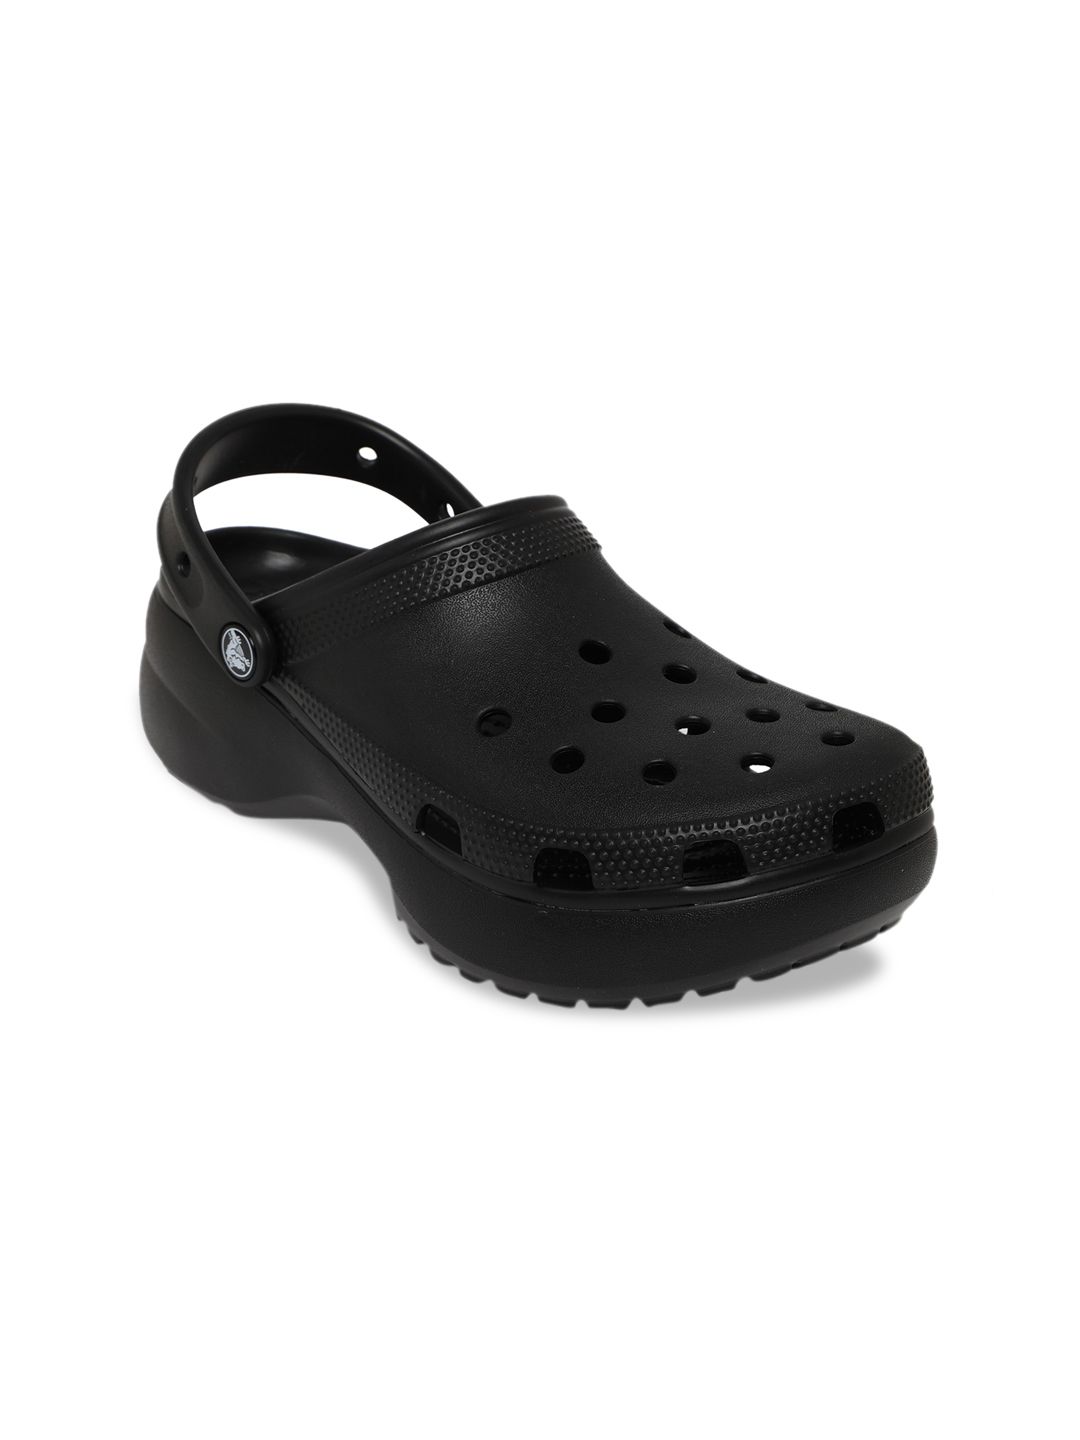 Crocs Classic  Women Black Sandals Price in India